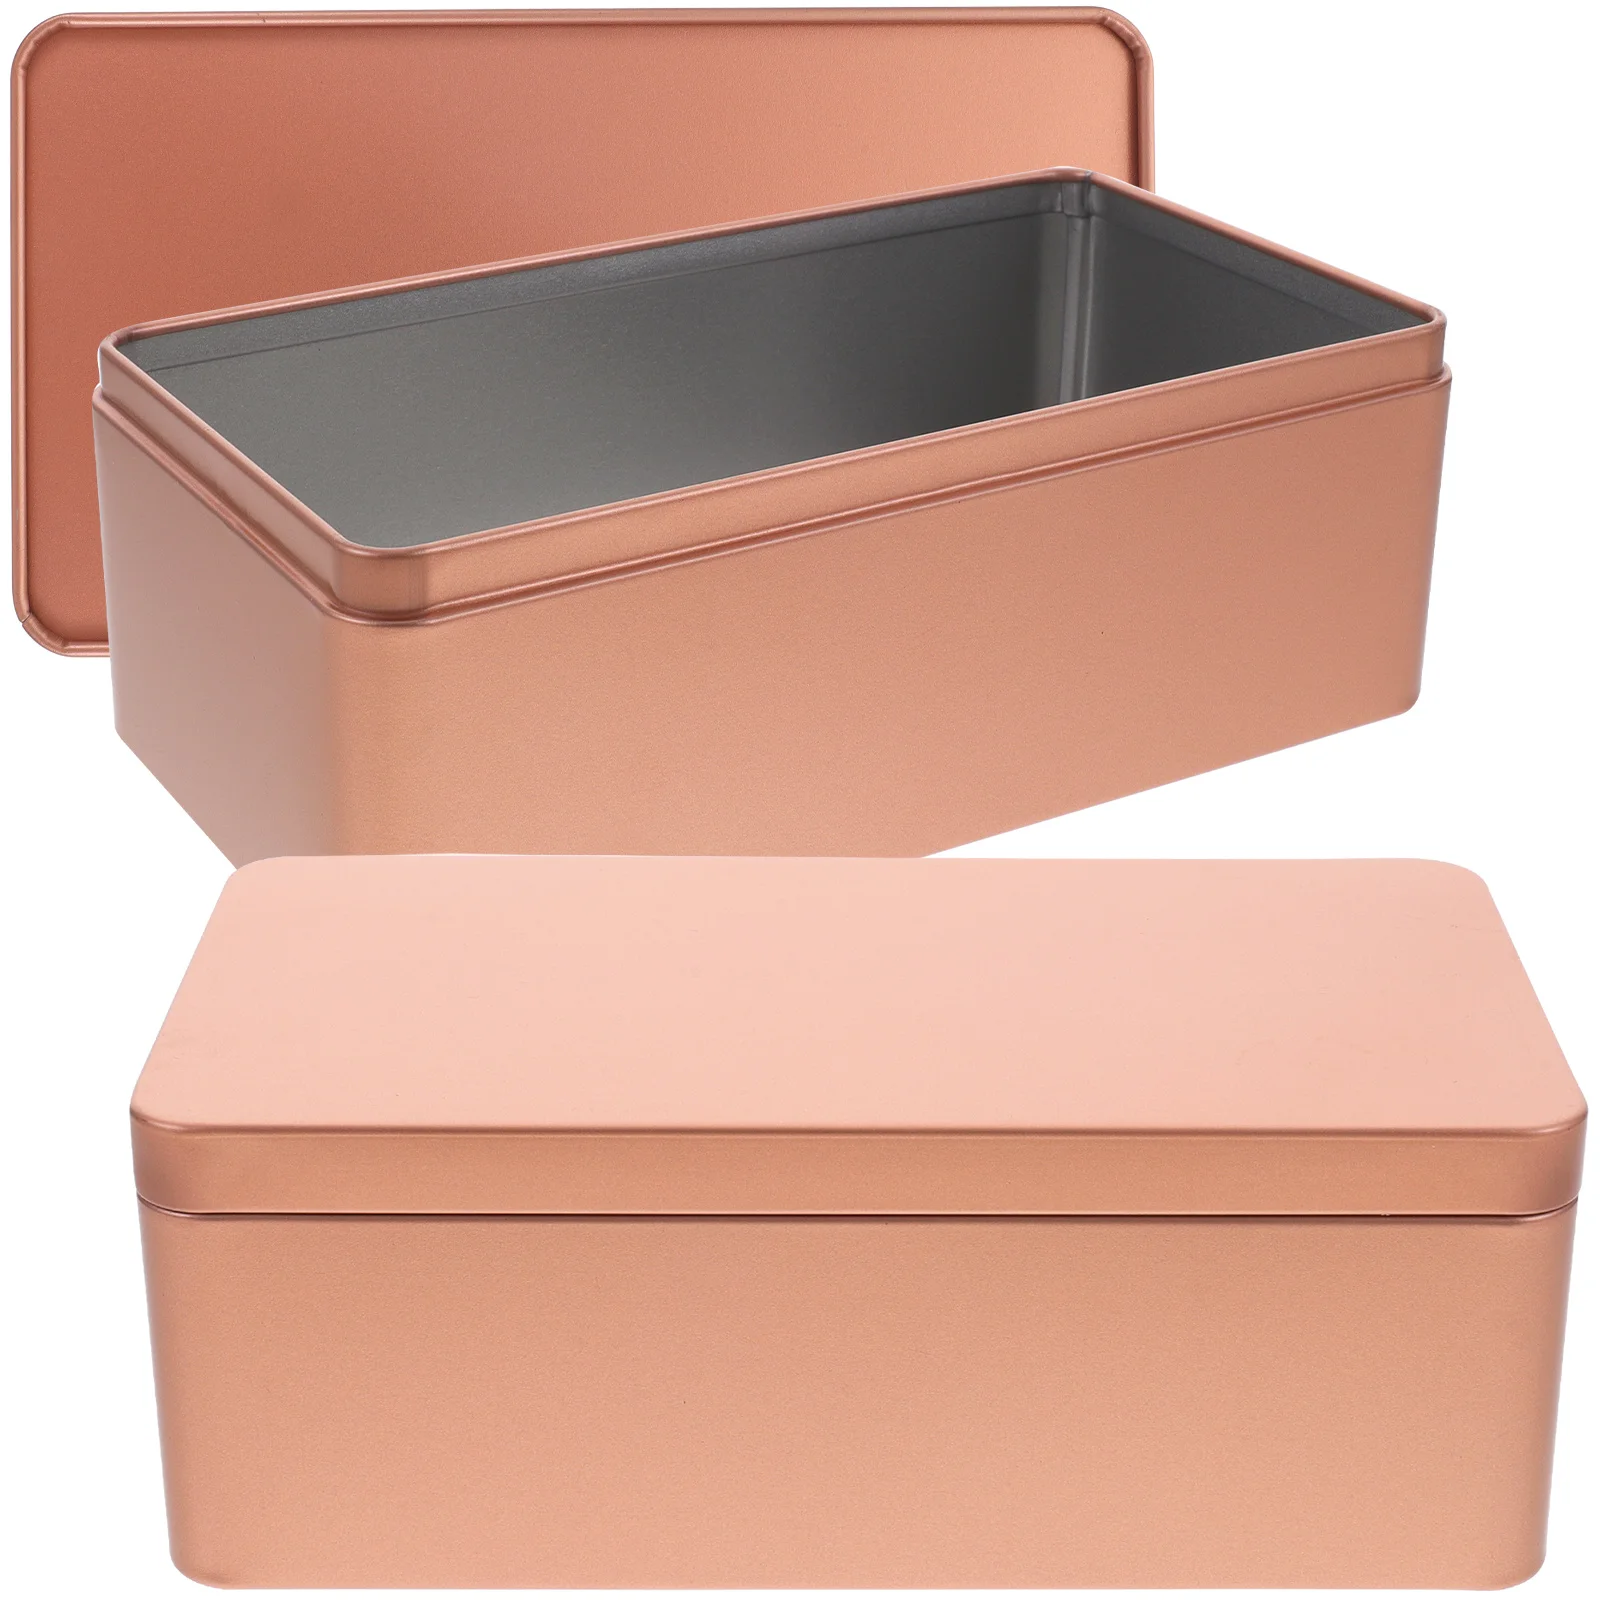 

Жестяная подарочная коробка, стандартная прямоугольная жестяная банка для упаковки бисквитов, маленькие крышки, металлический контейнер для хранения конфет и чая